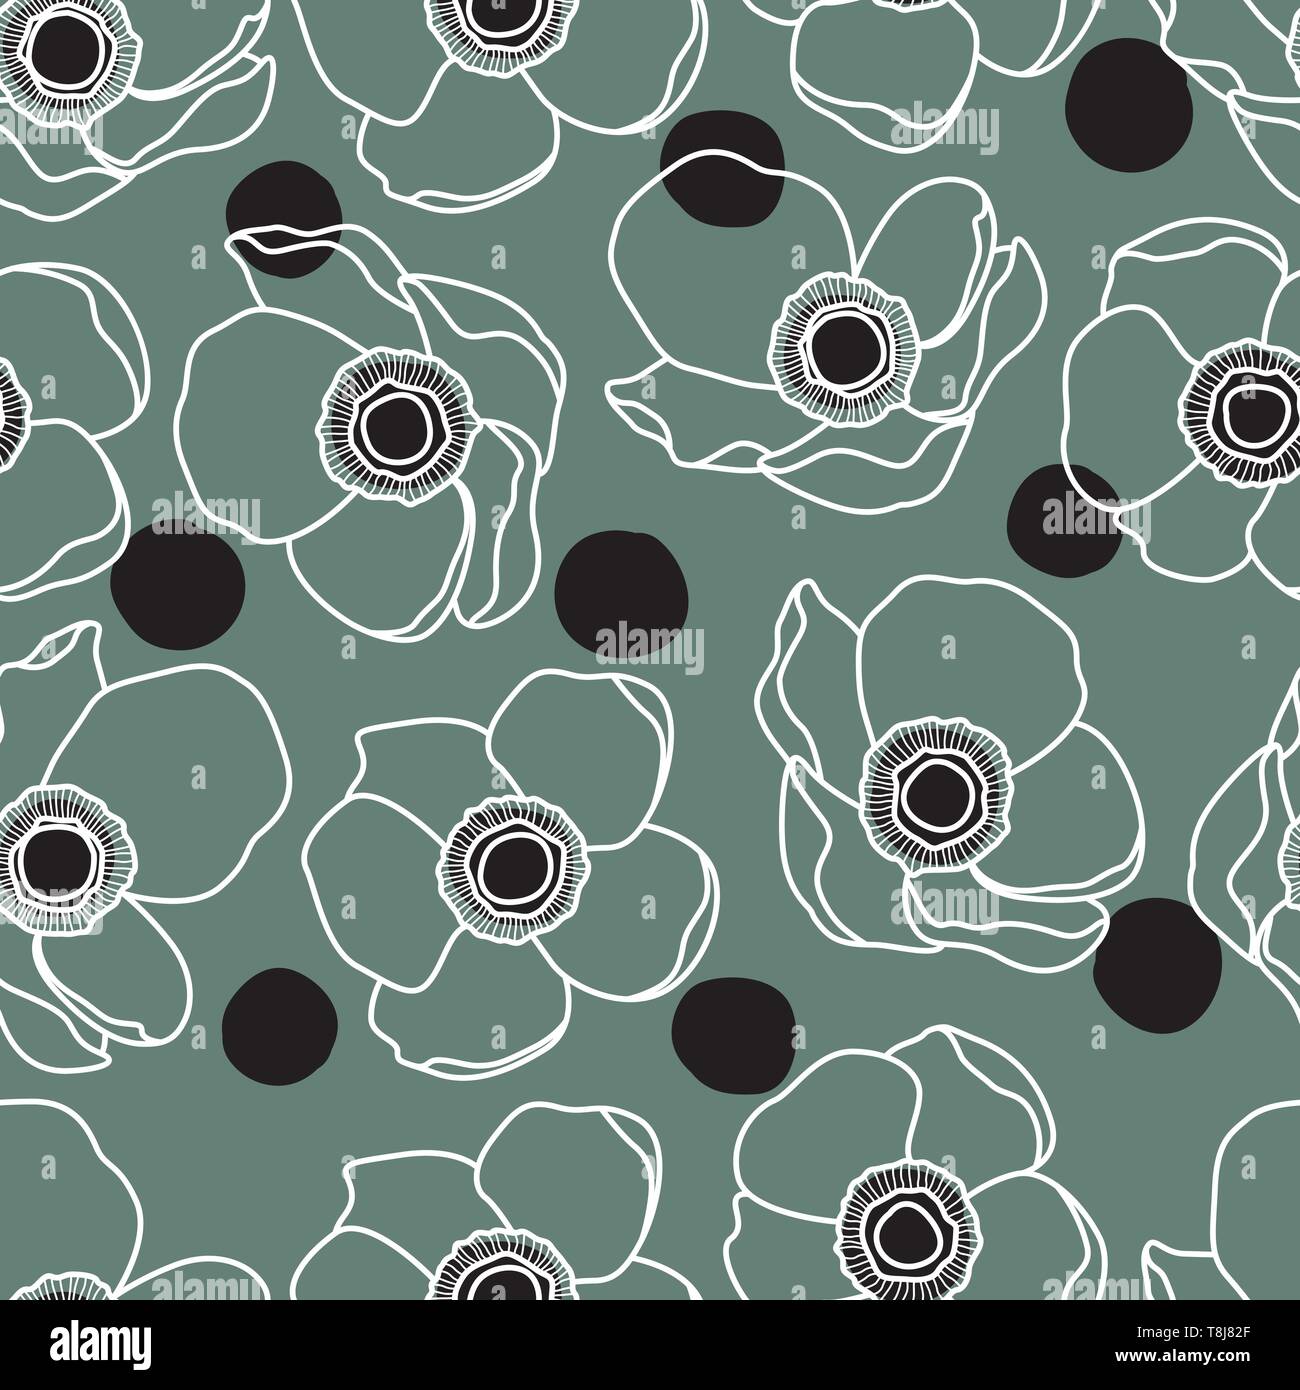 Anemone bianca boccioli di fiori modello di linea con punti neri Illustrazione Vettoriale